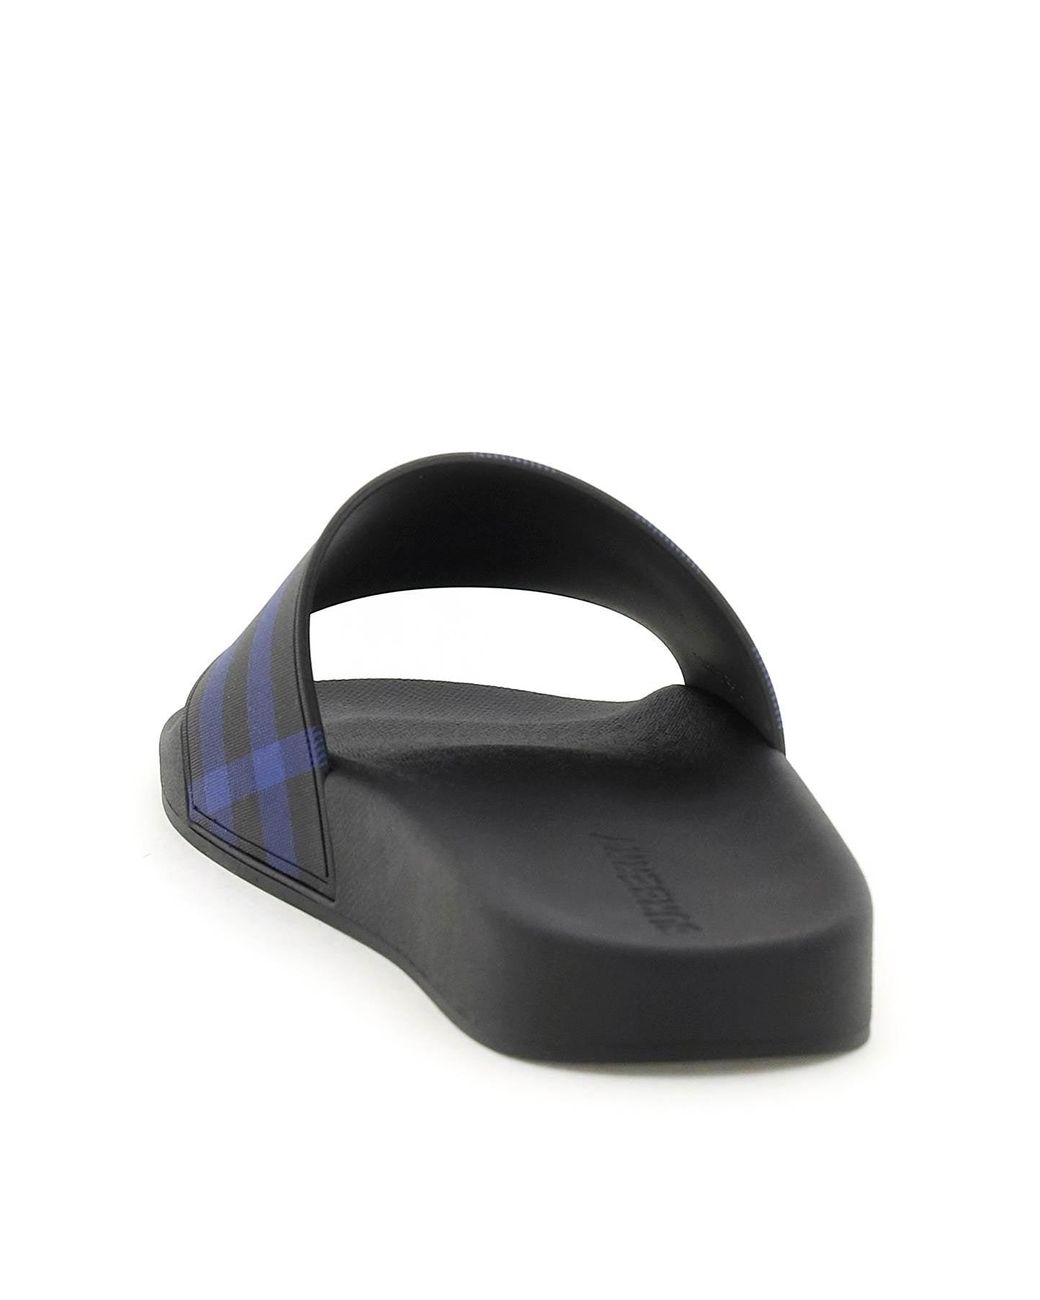 Burberry Check Print Slides in Blue/Black Save 24% Mens Shoes Sandals for Men slides and flip flops Sandals and flip-flops Blue 